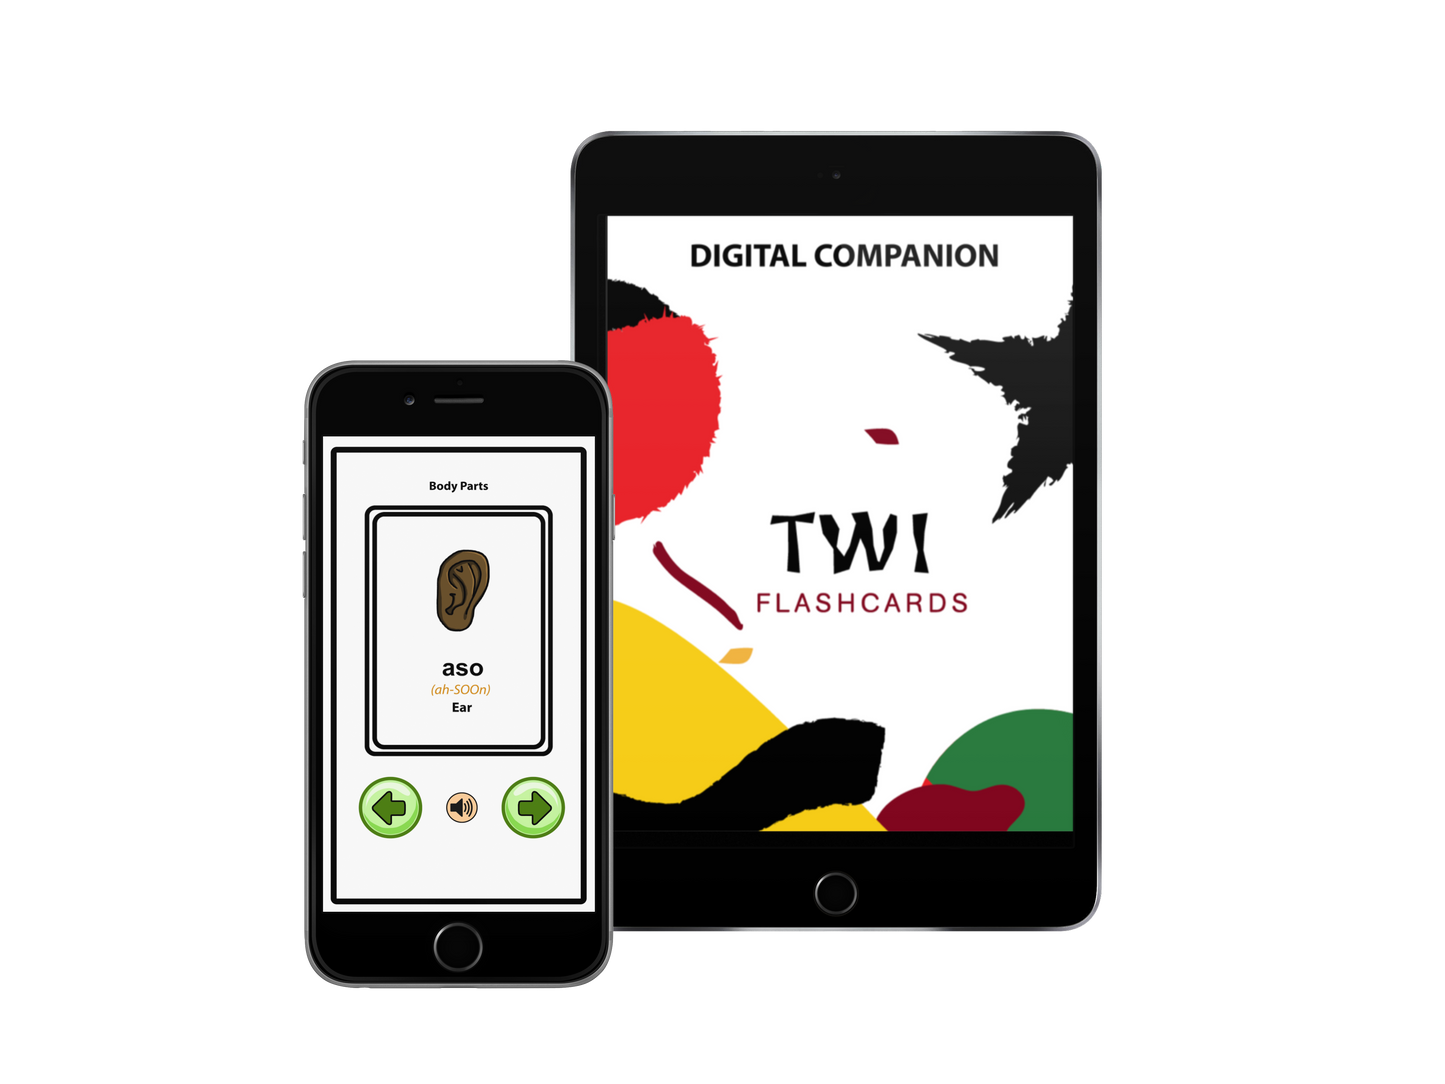 Twi Flashcards Digital Companion